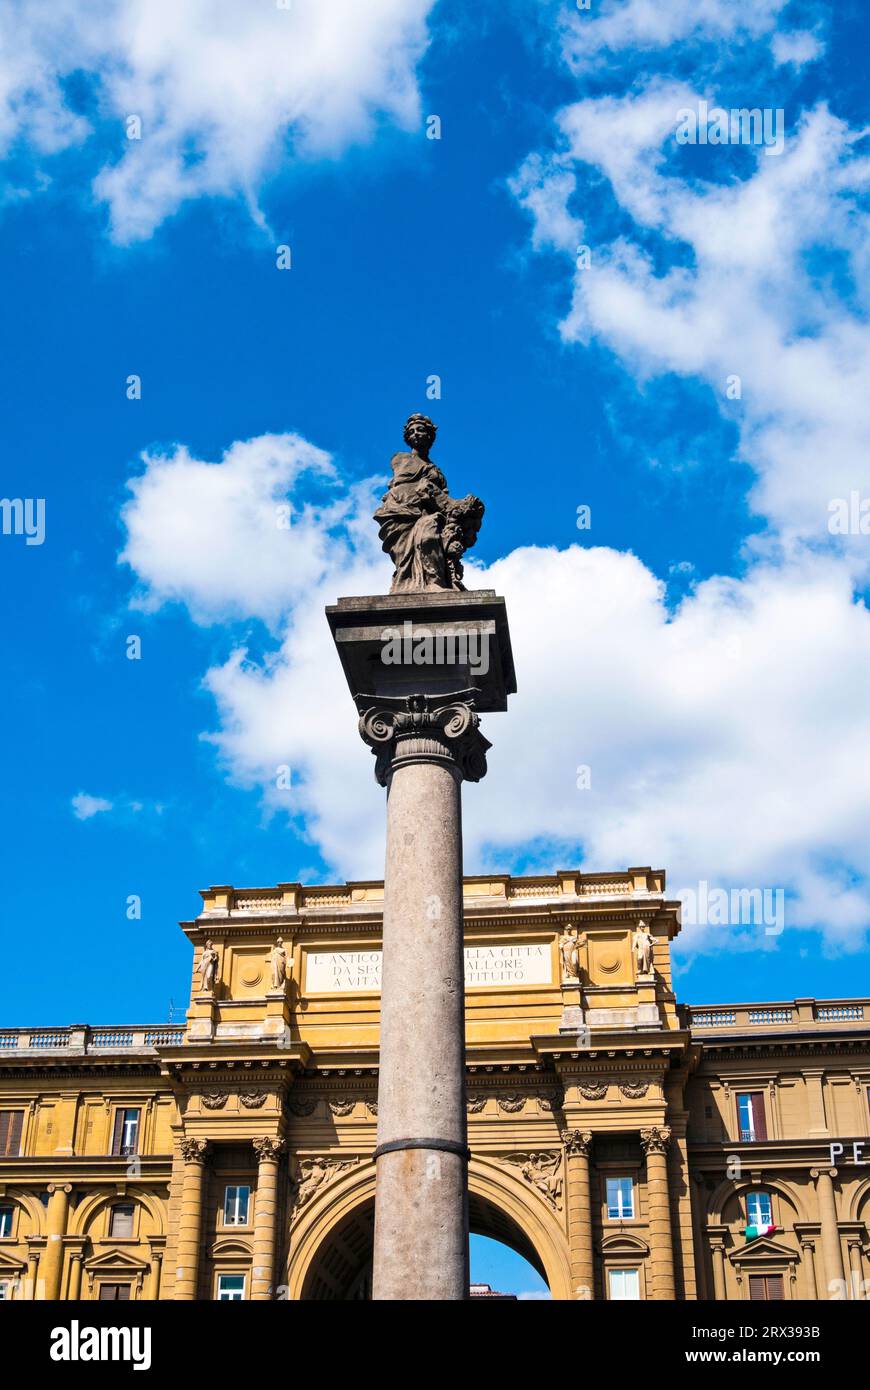 Colonna dell'abbondanza, Piazza della Repubblica, Florence, Toscane, Italie Banque D'Images